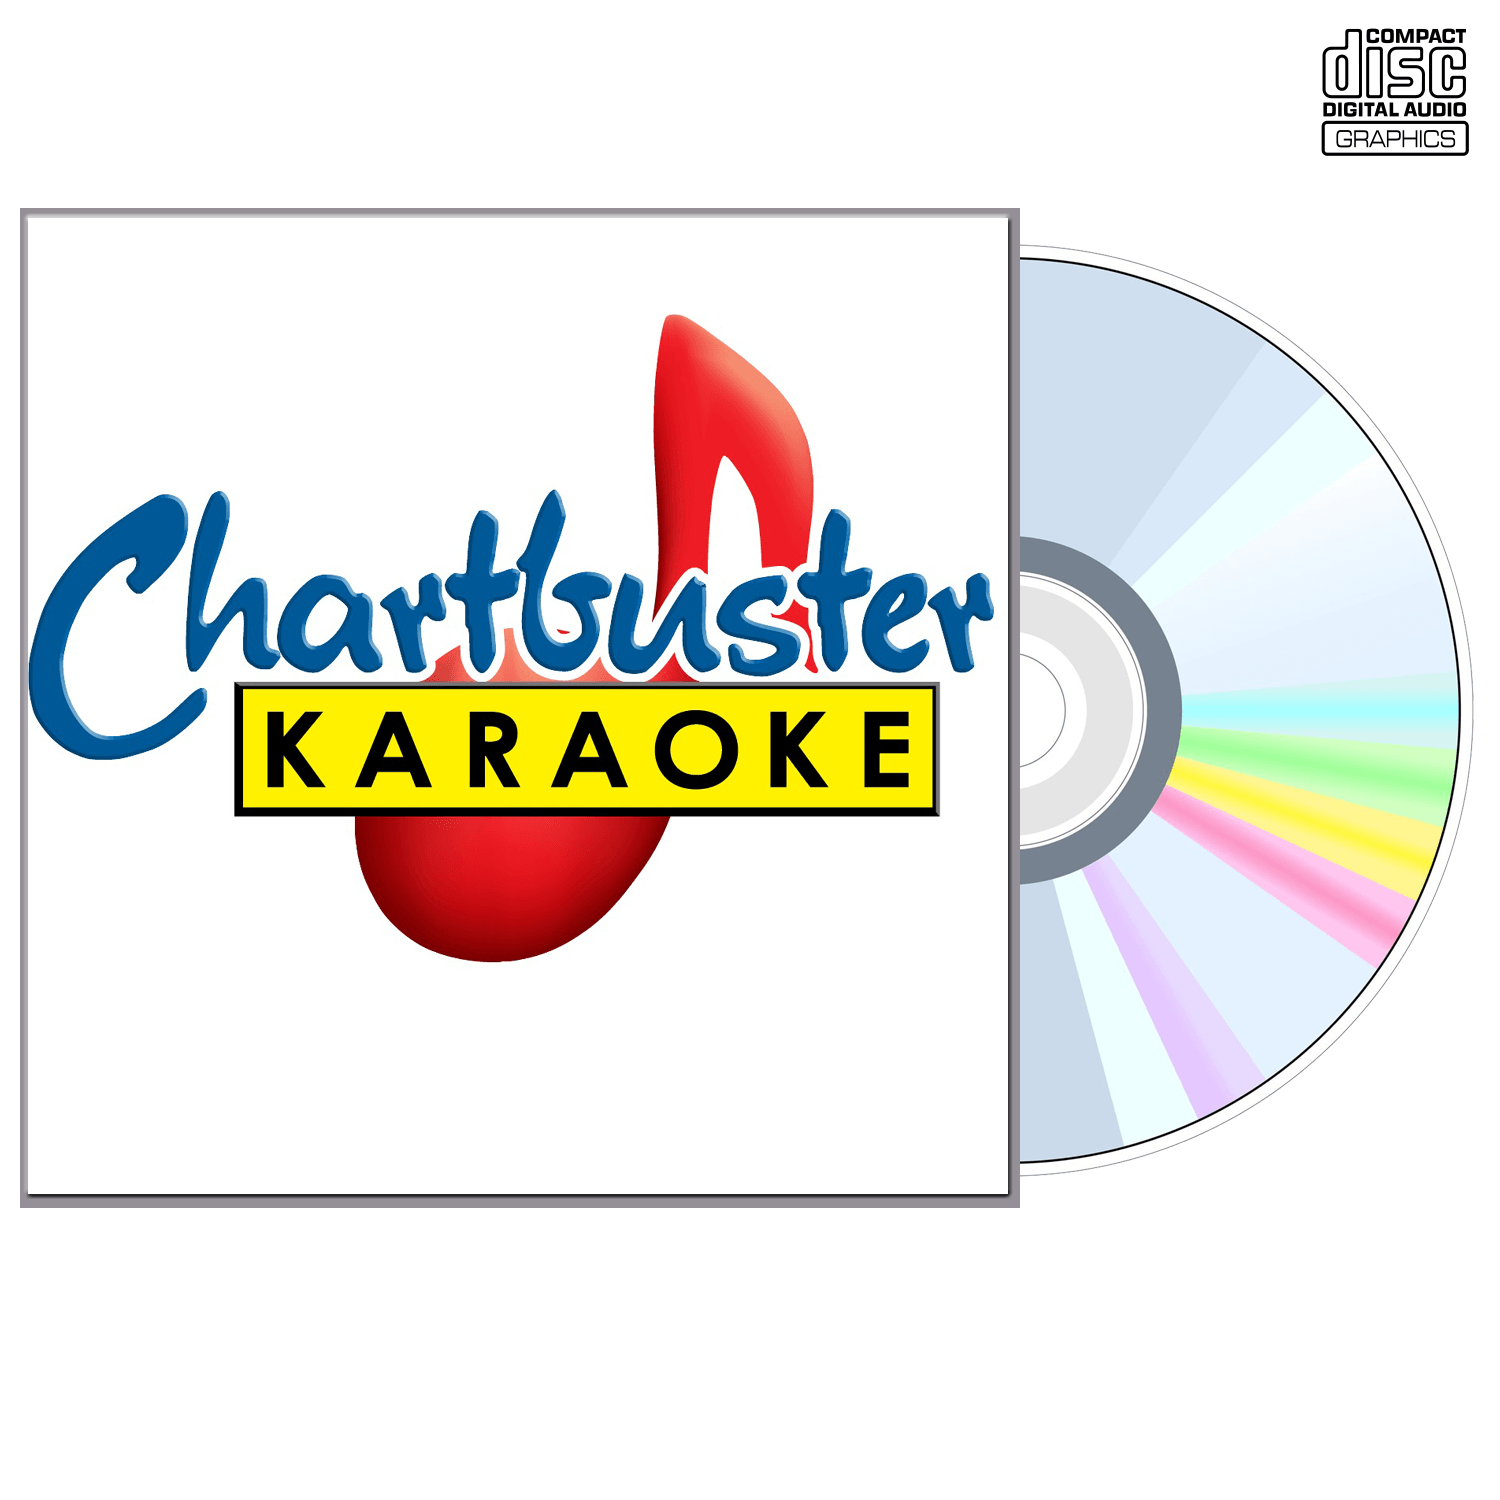 Ty England - CD+G - Chartbuster Karaoke - Karaoke Home Entertainment